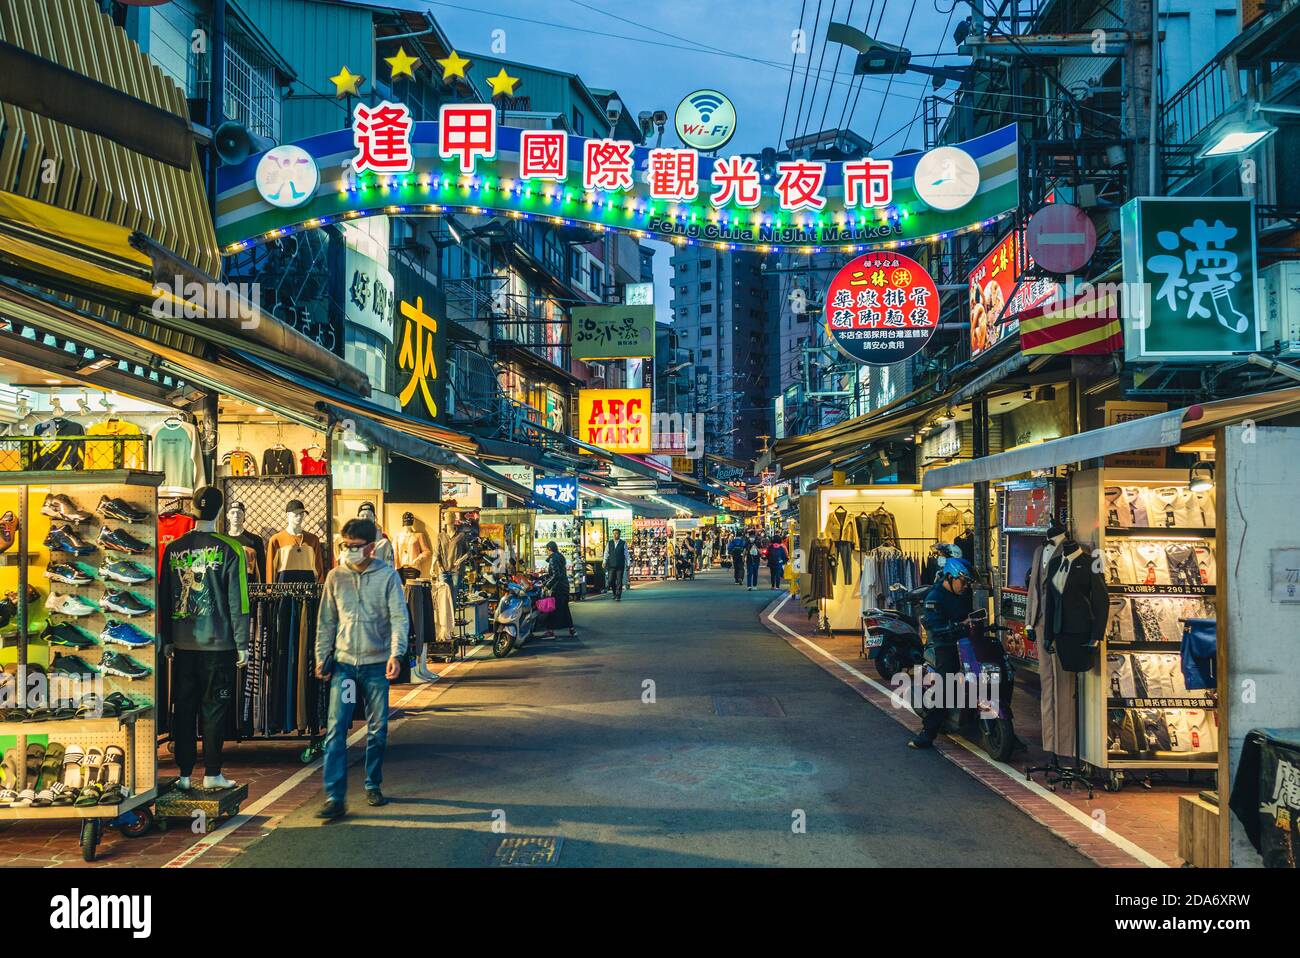 10 novembre 2020: Mercato notturno di Fengjia, è uno dei famosi quartieri commerciali di Taichung e rappresenta il più grande mercato notturno di Taiwan, Foto Stock